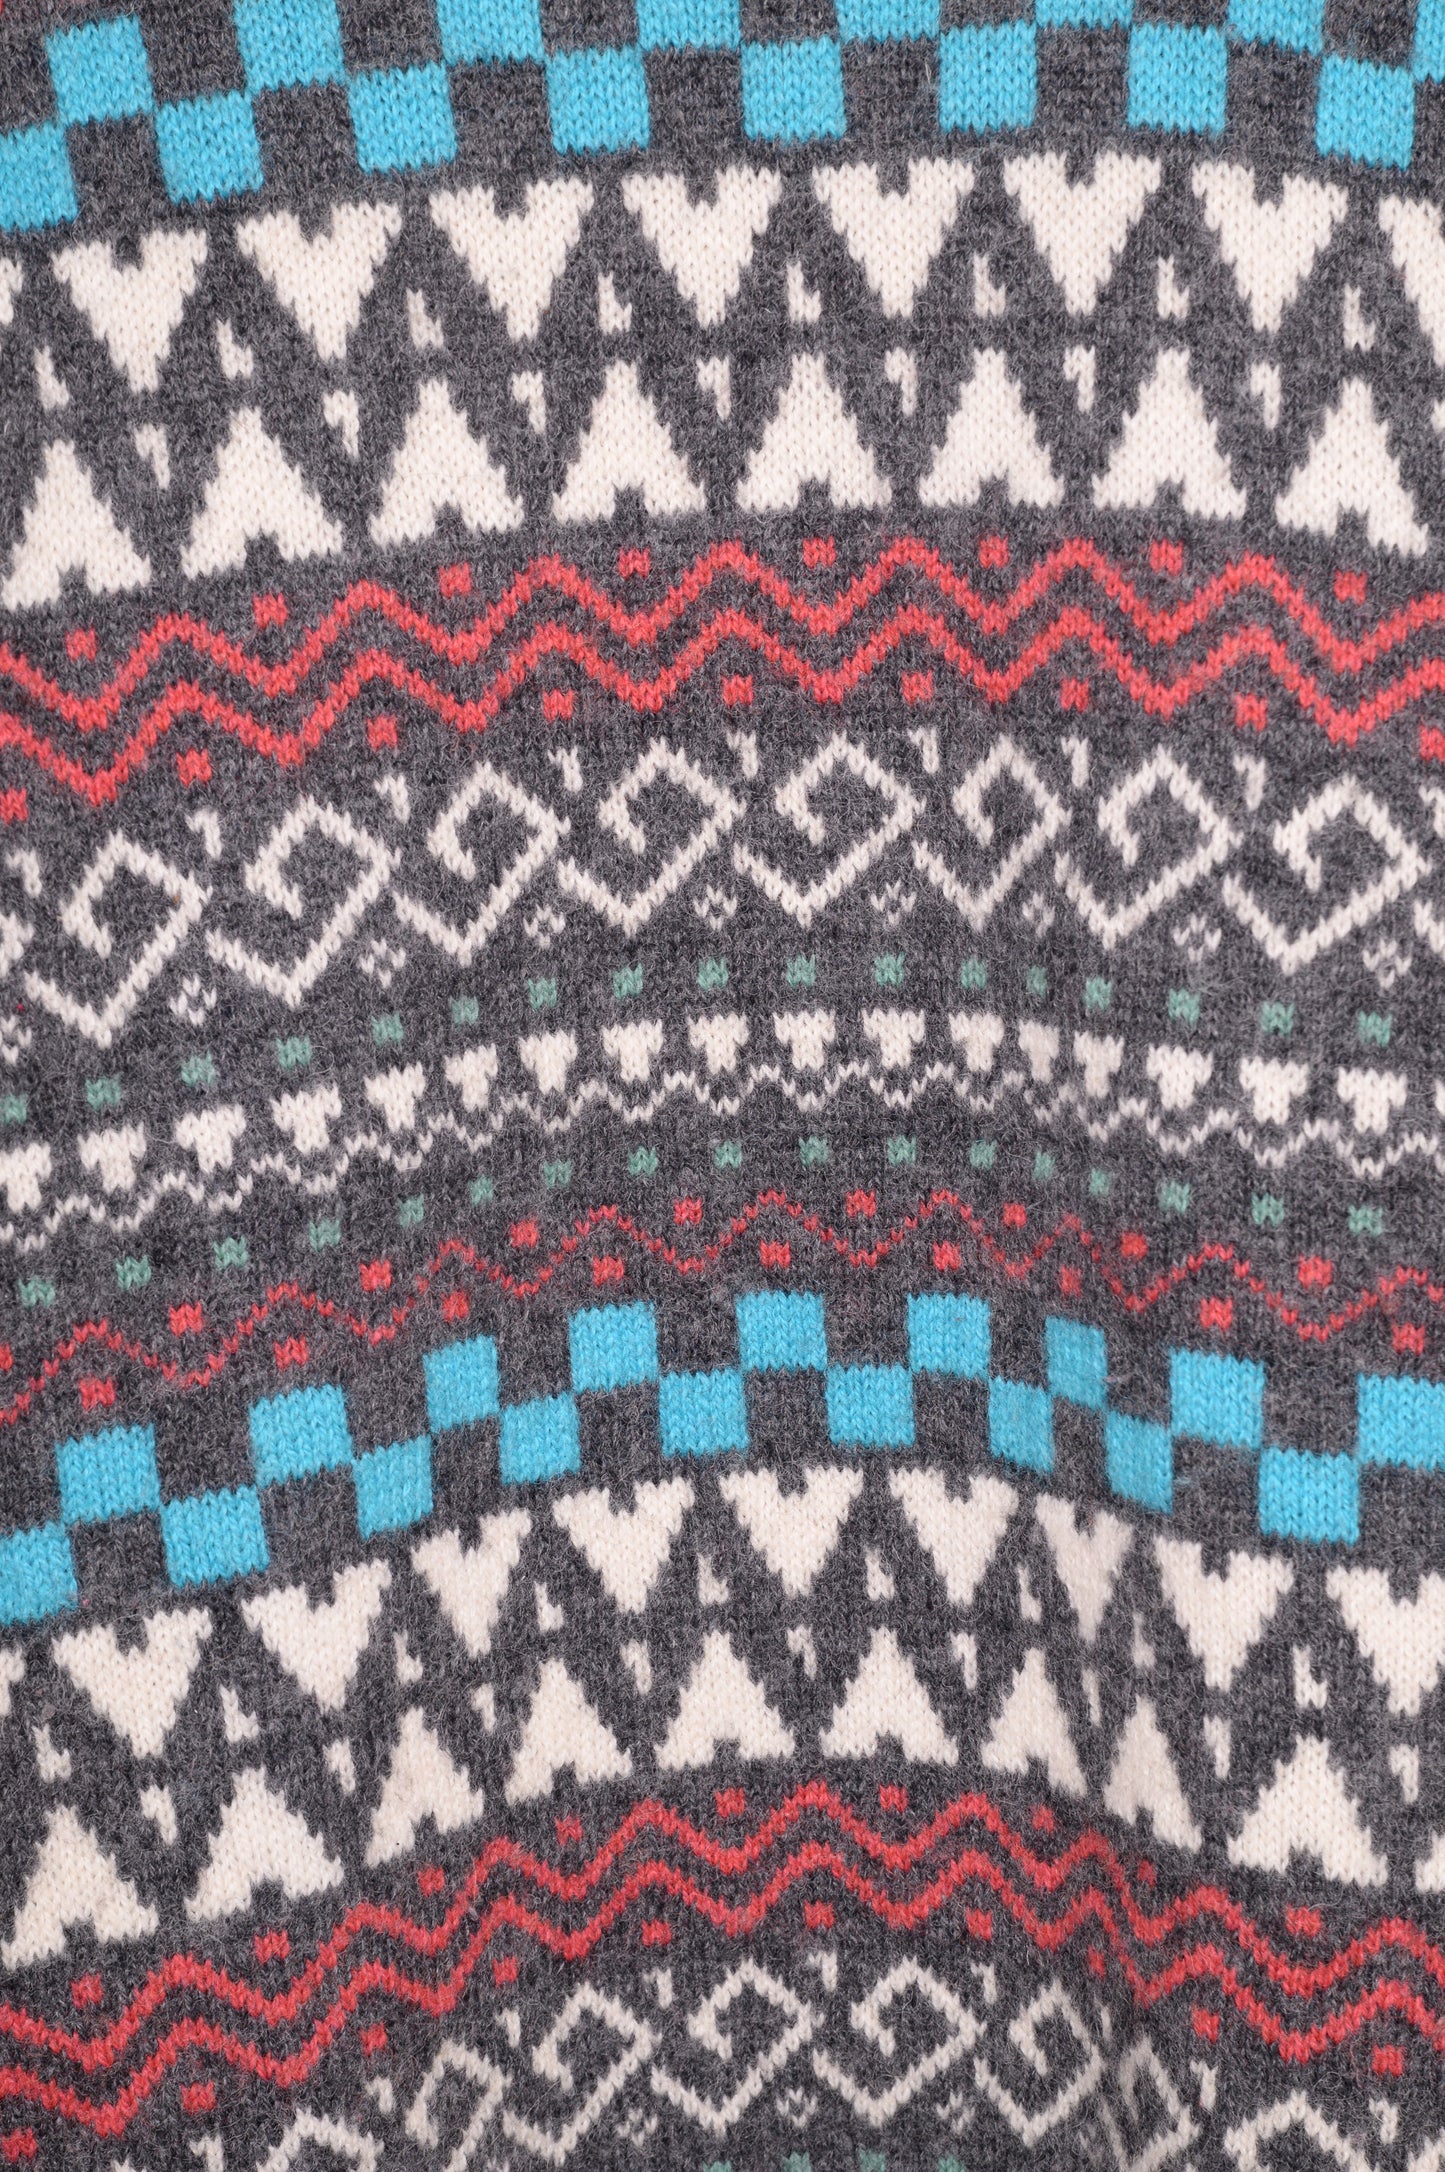 1990s Geometric Wool Sweater